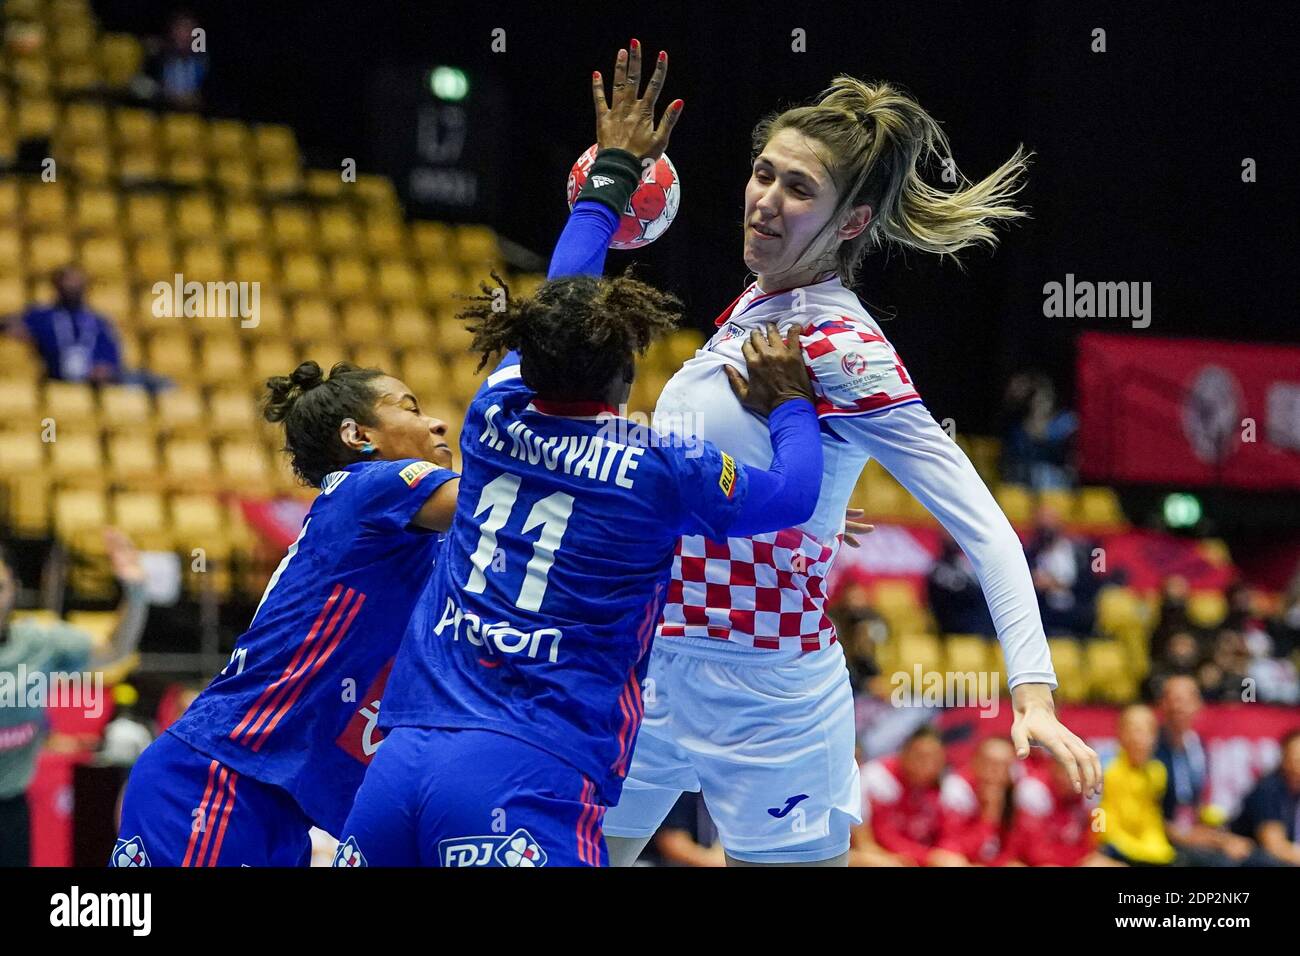 HERNING, DÄNEMARK - 18. DEZEMBER: Aissatou Kouyate aus Frankreich, Camila Micijevic aus Kroatien während des EHF Euro 2020-Spiels der Frauen zwischen Frankreich und Kroatien Stockfoto